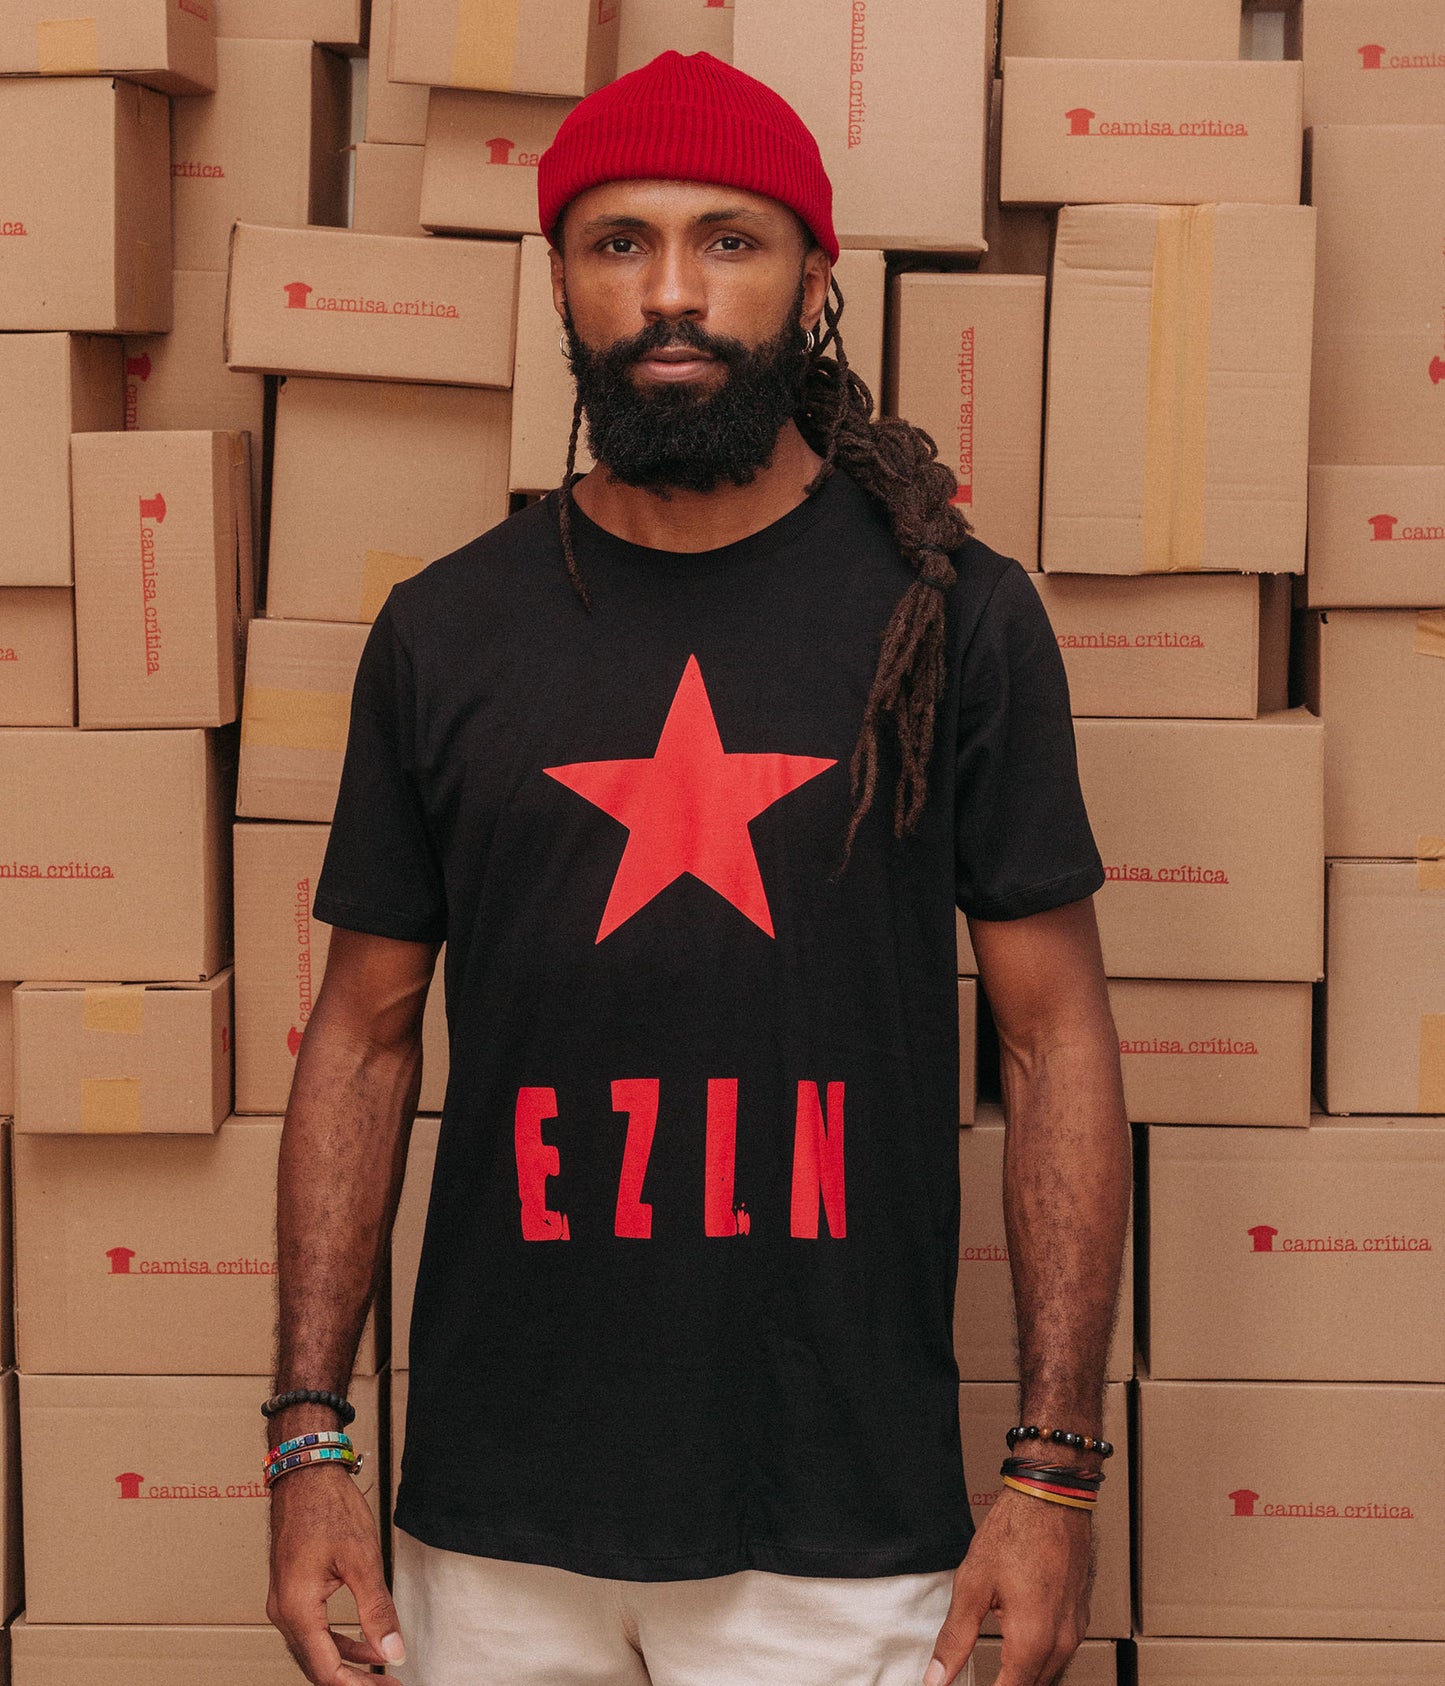 Homem vestindo Camiseta Básica Estampa: Texto escrito EZLN(Exército Zapatista de Libertação Nacional) com uma estrela acima.